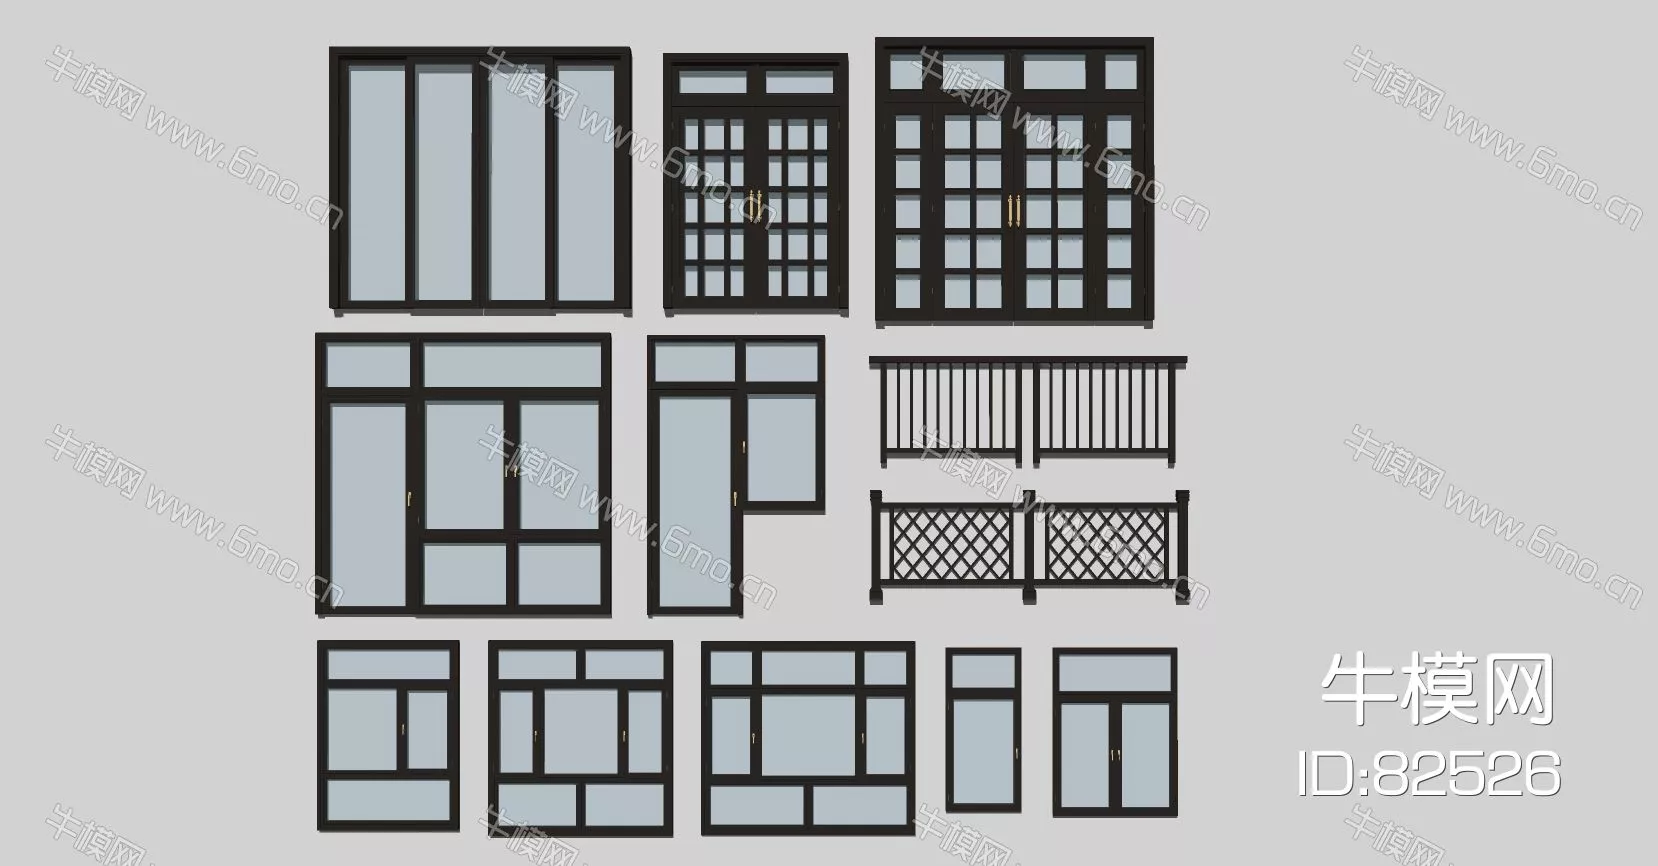 MODERN DOOR AND WINDOWS - SKETCHUP 3D MODEL - VRAY - 82526